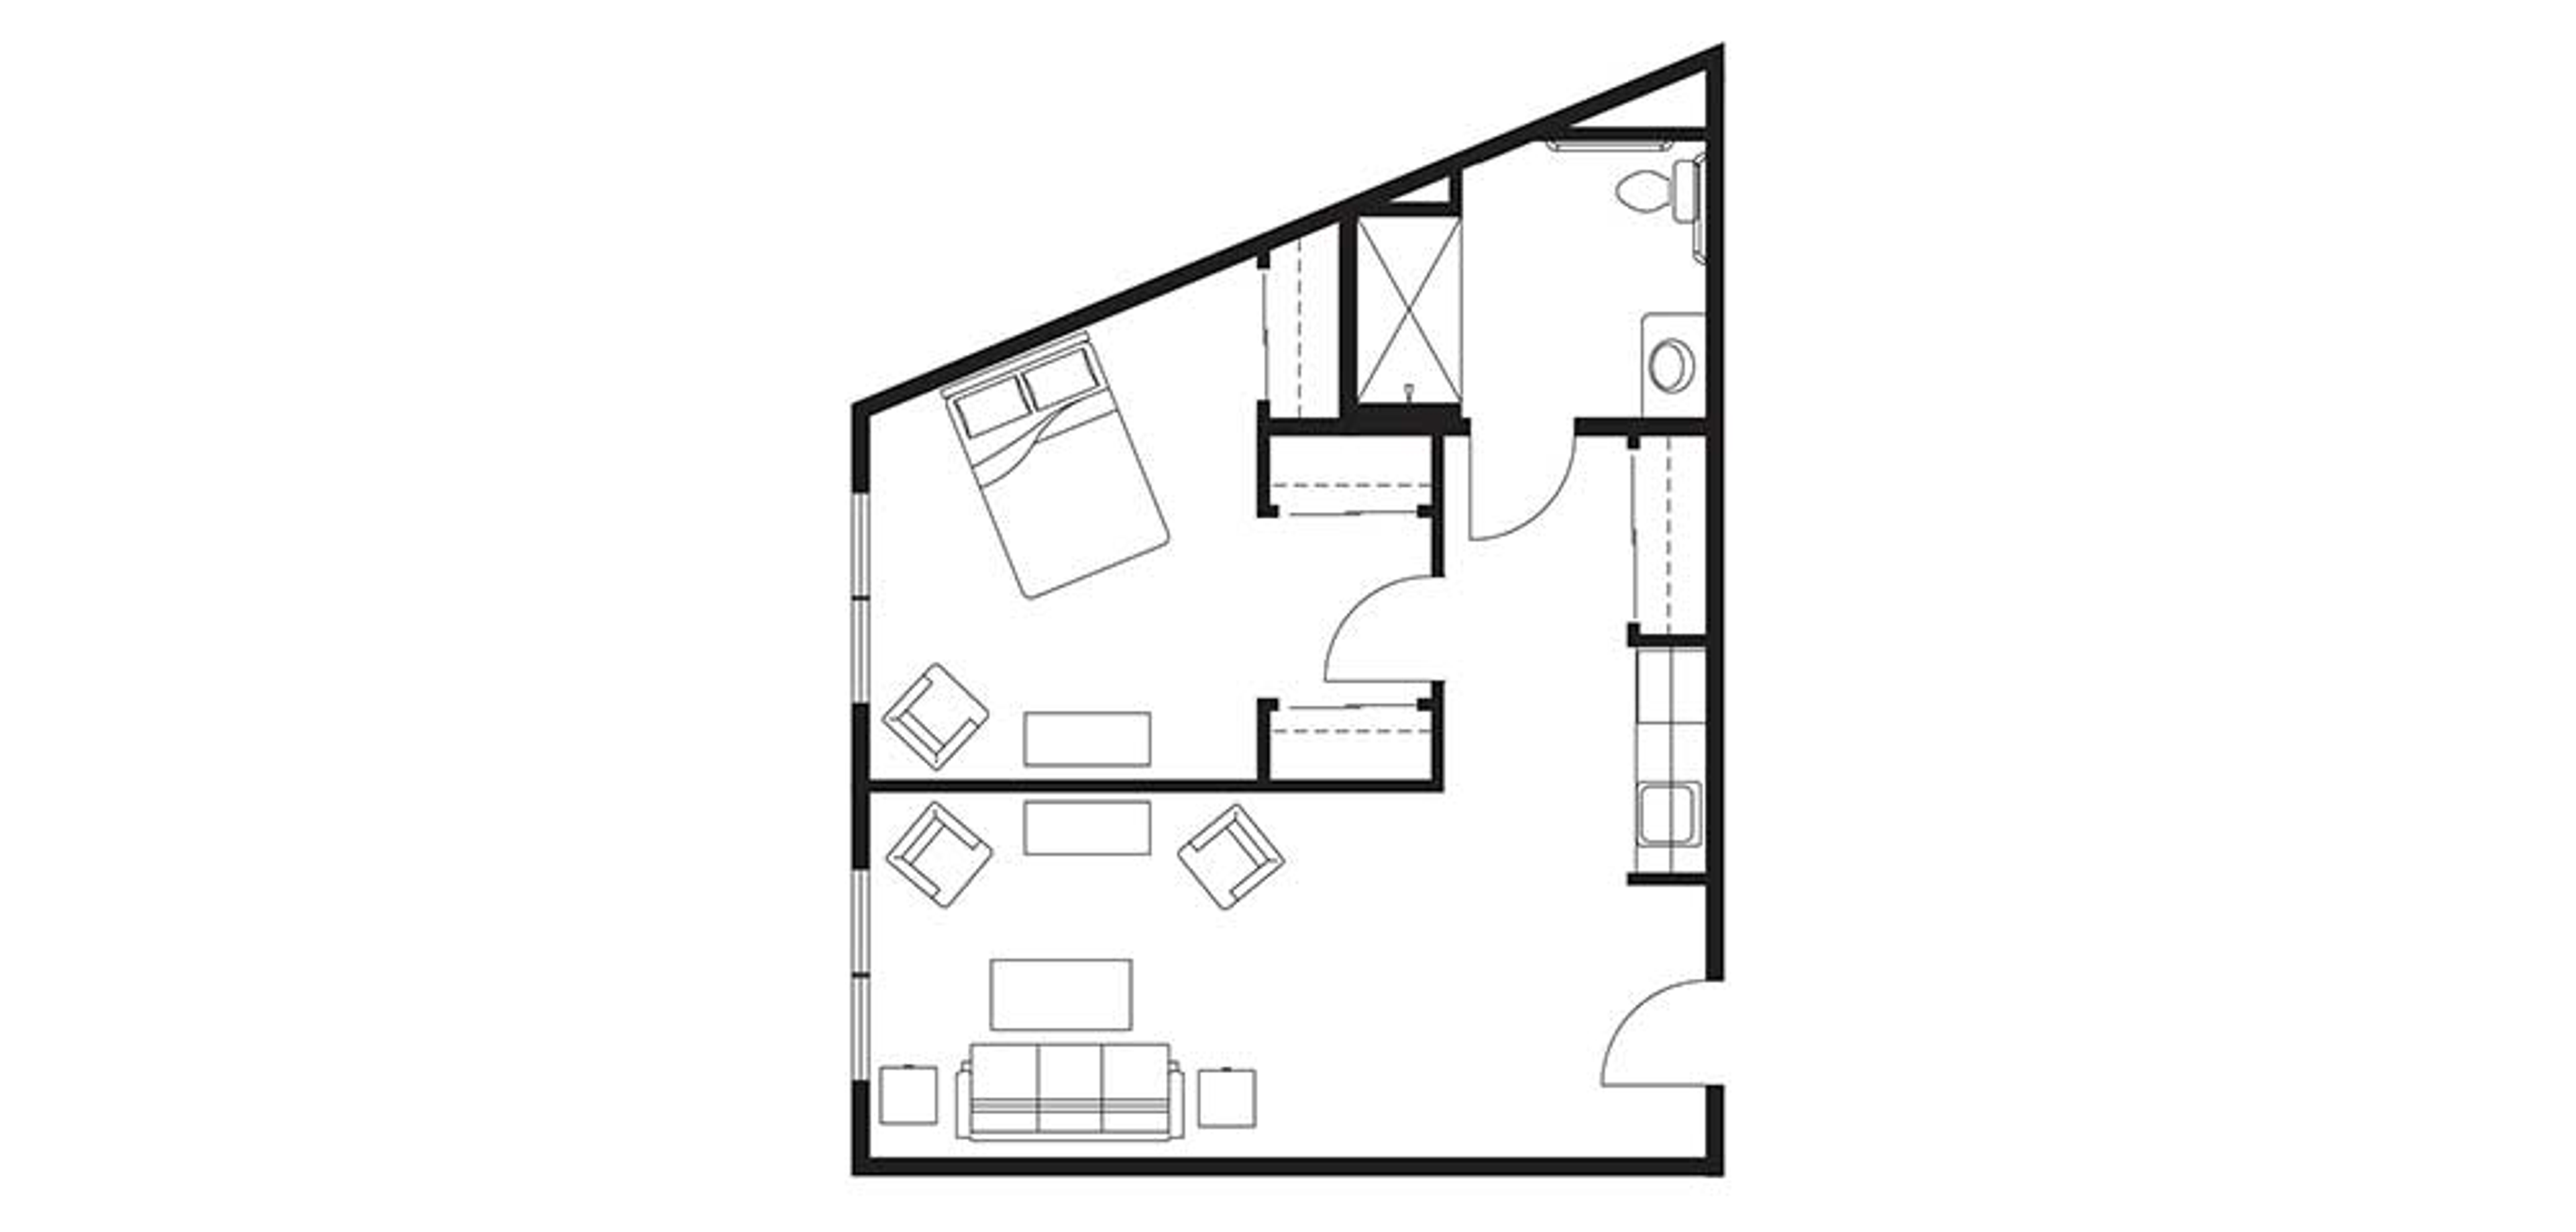 Floorplan Ocean Ridge Assisted Living One Bedroom Large